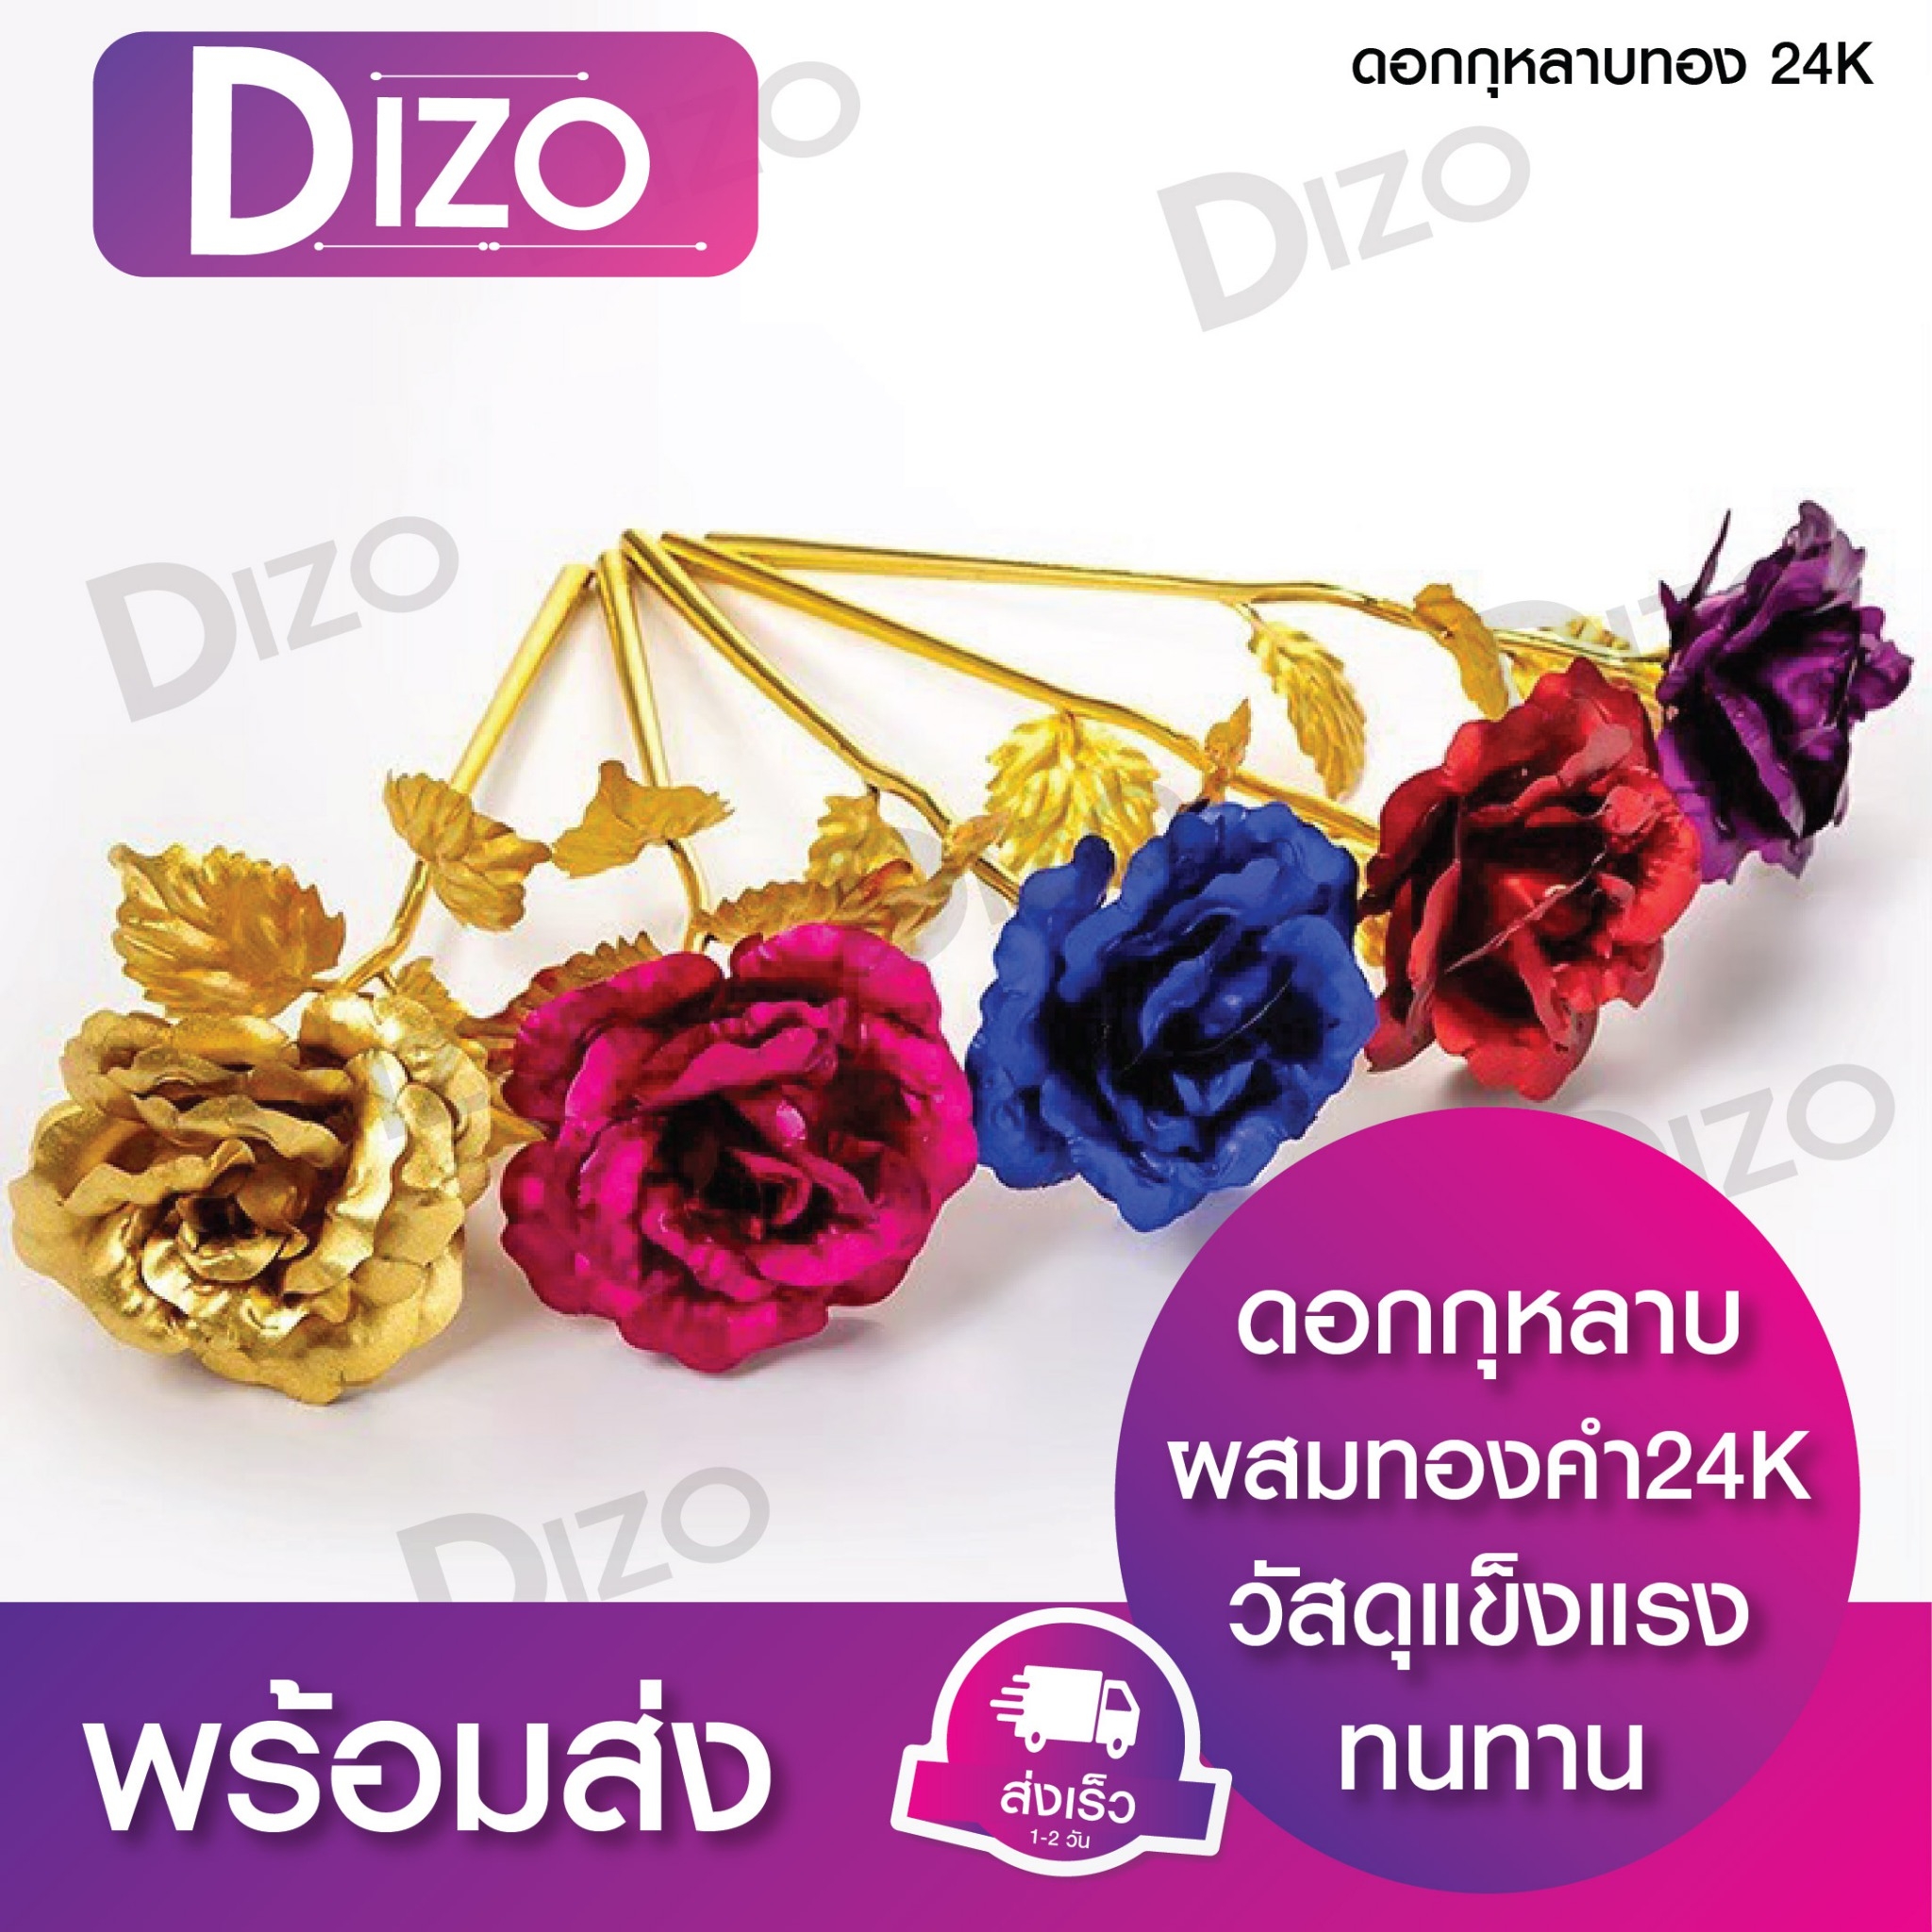 DiZo (42 ดอกกุหลาบเดี่ยว) ดอกกุหลาบ 24 K ต้อนรับวันวาเลนไทน์ ดอกไม้สำหรับประดับตกแต่งและให้แทนของขวัญเกิด บอกรัก ขอแต่งงาน